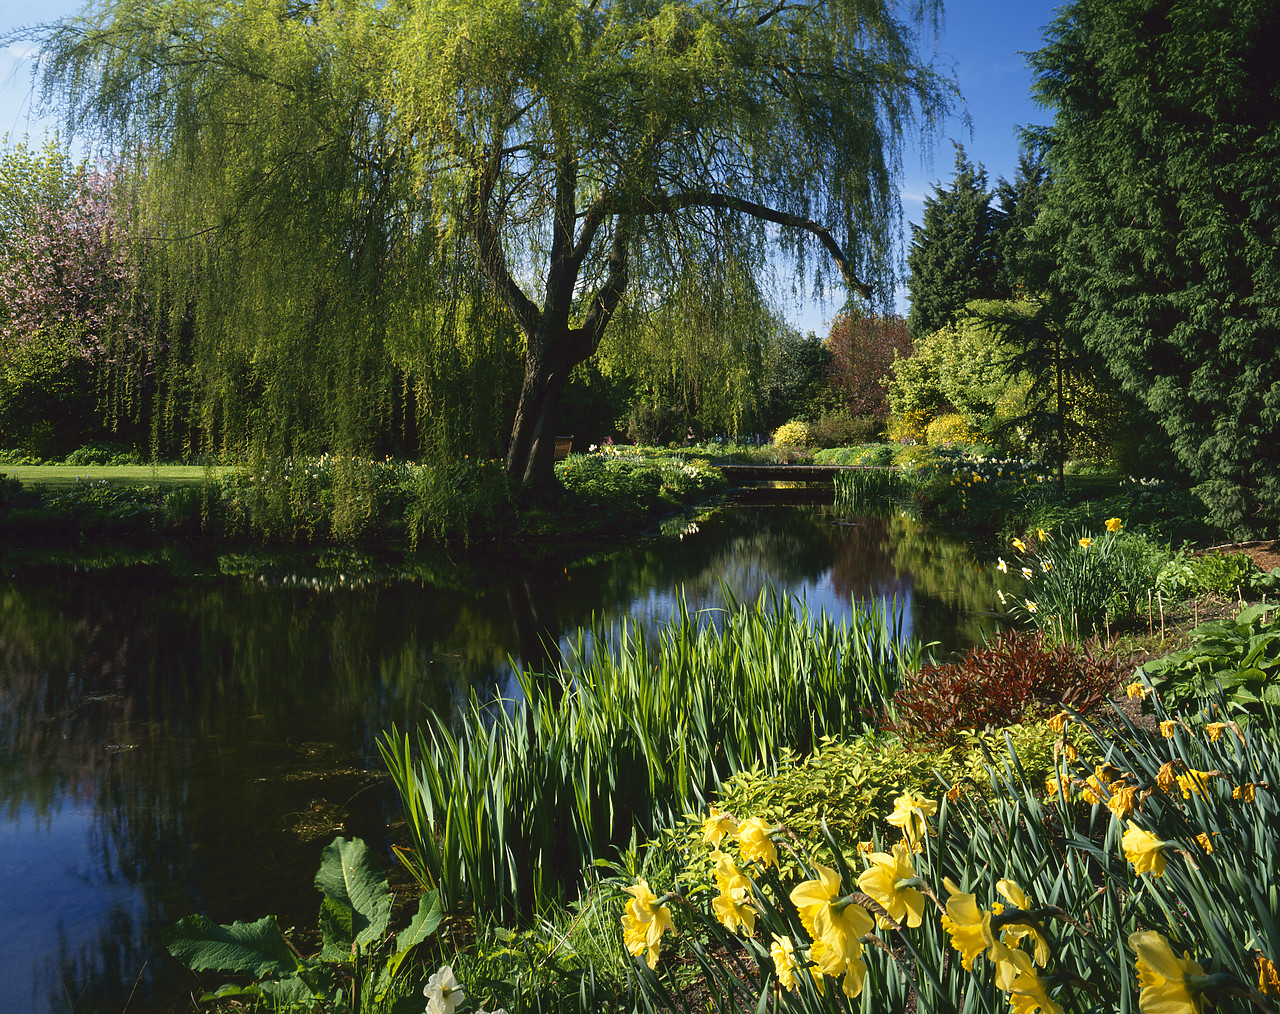 #965993-2 - Gooderstone Water Gardens, Norfolk, England